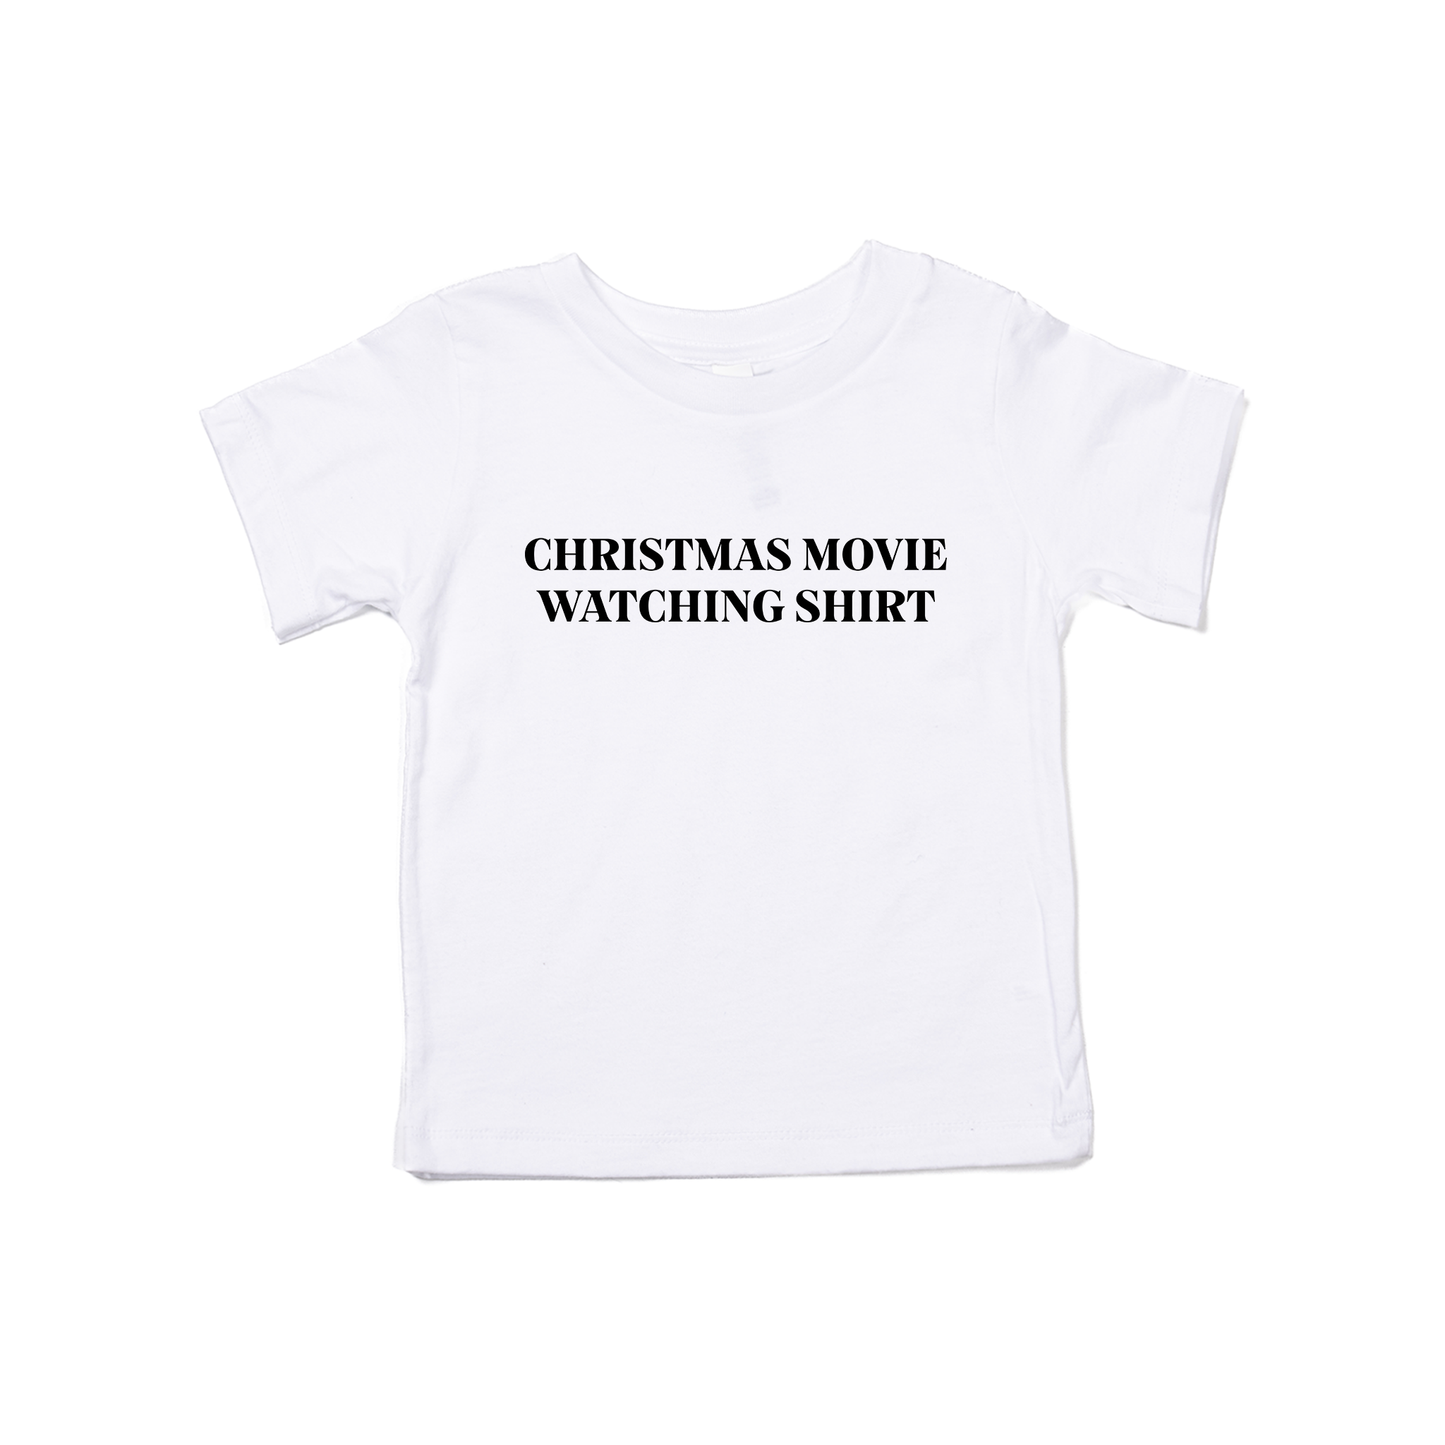 Christmas Movie Watching Shirt (Black) - Kids Tee (White)